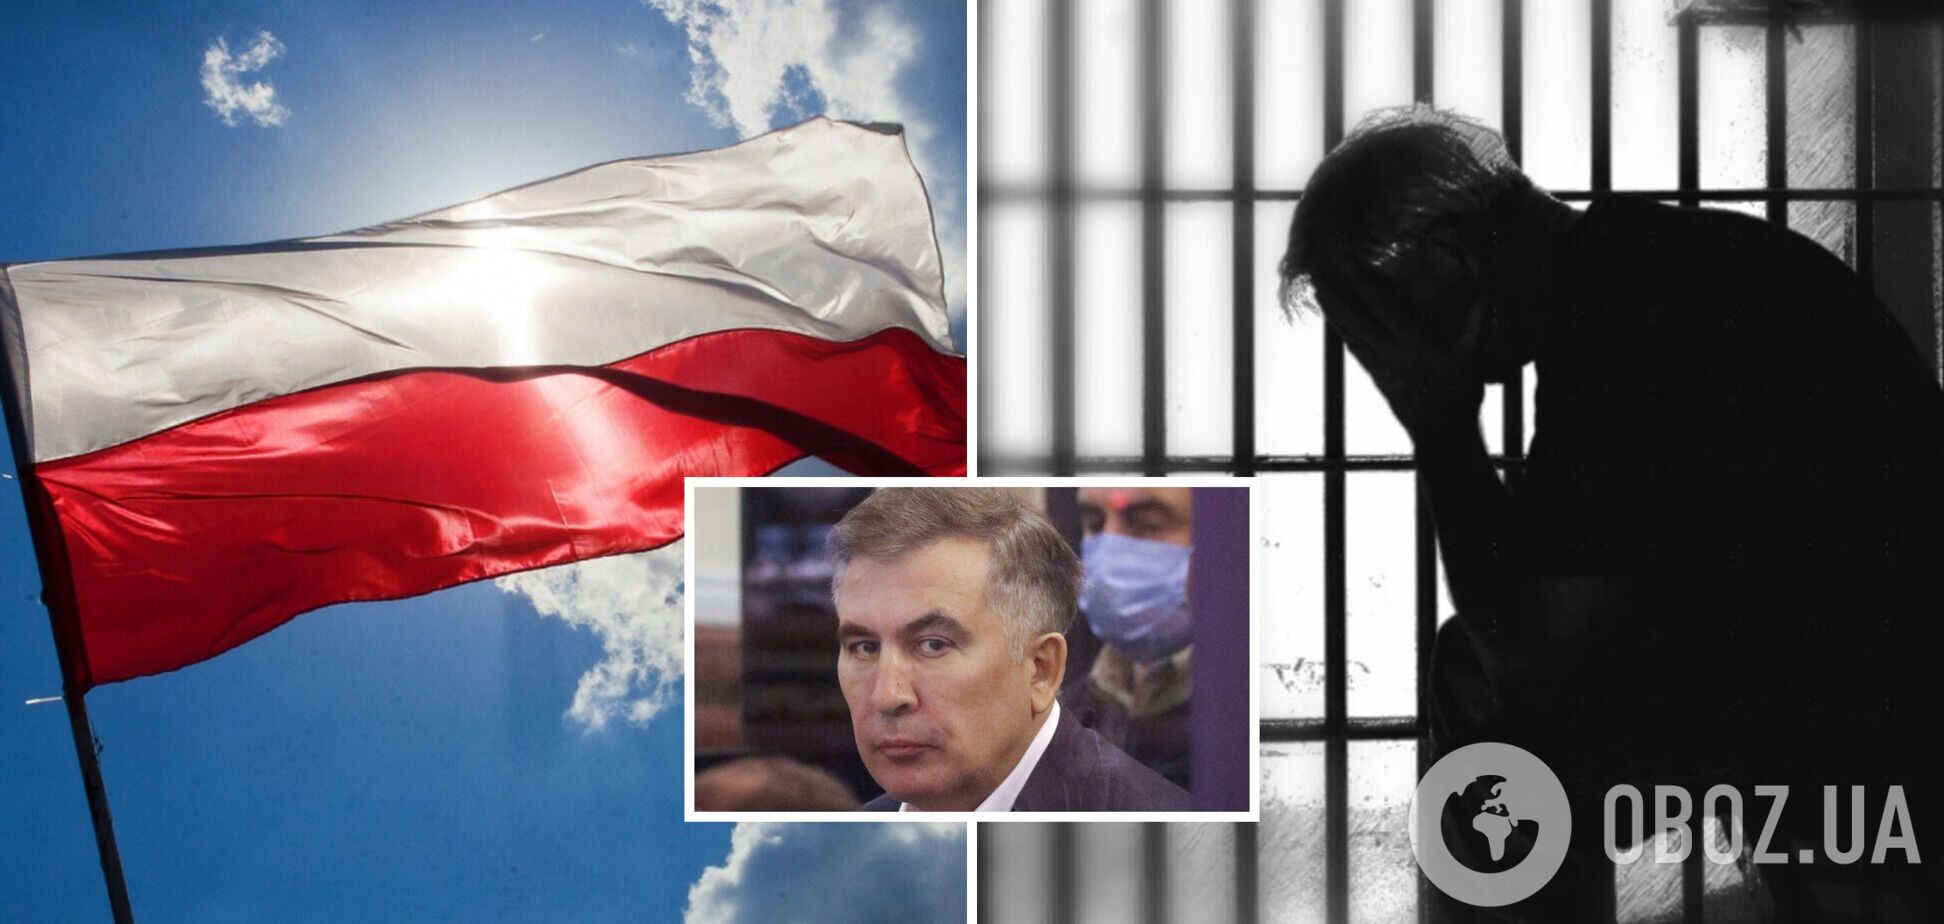 Польша вышла с инициативой к Грузии принять Саакашвили на лечение